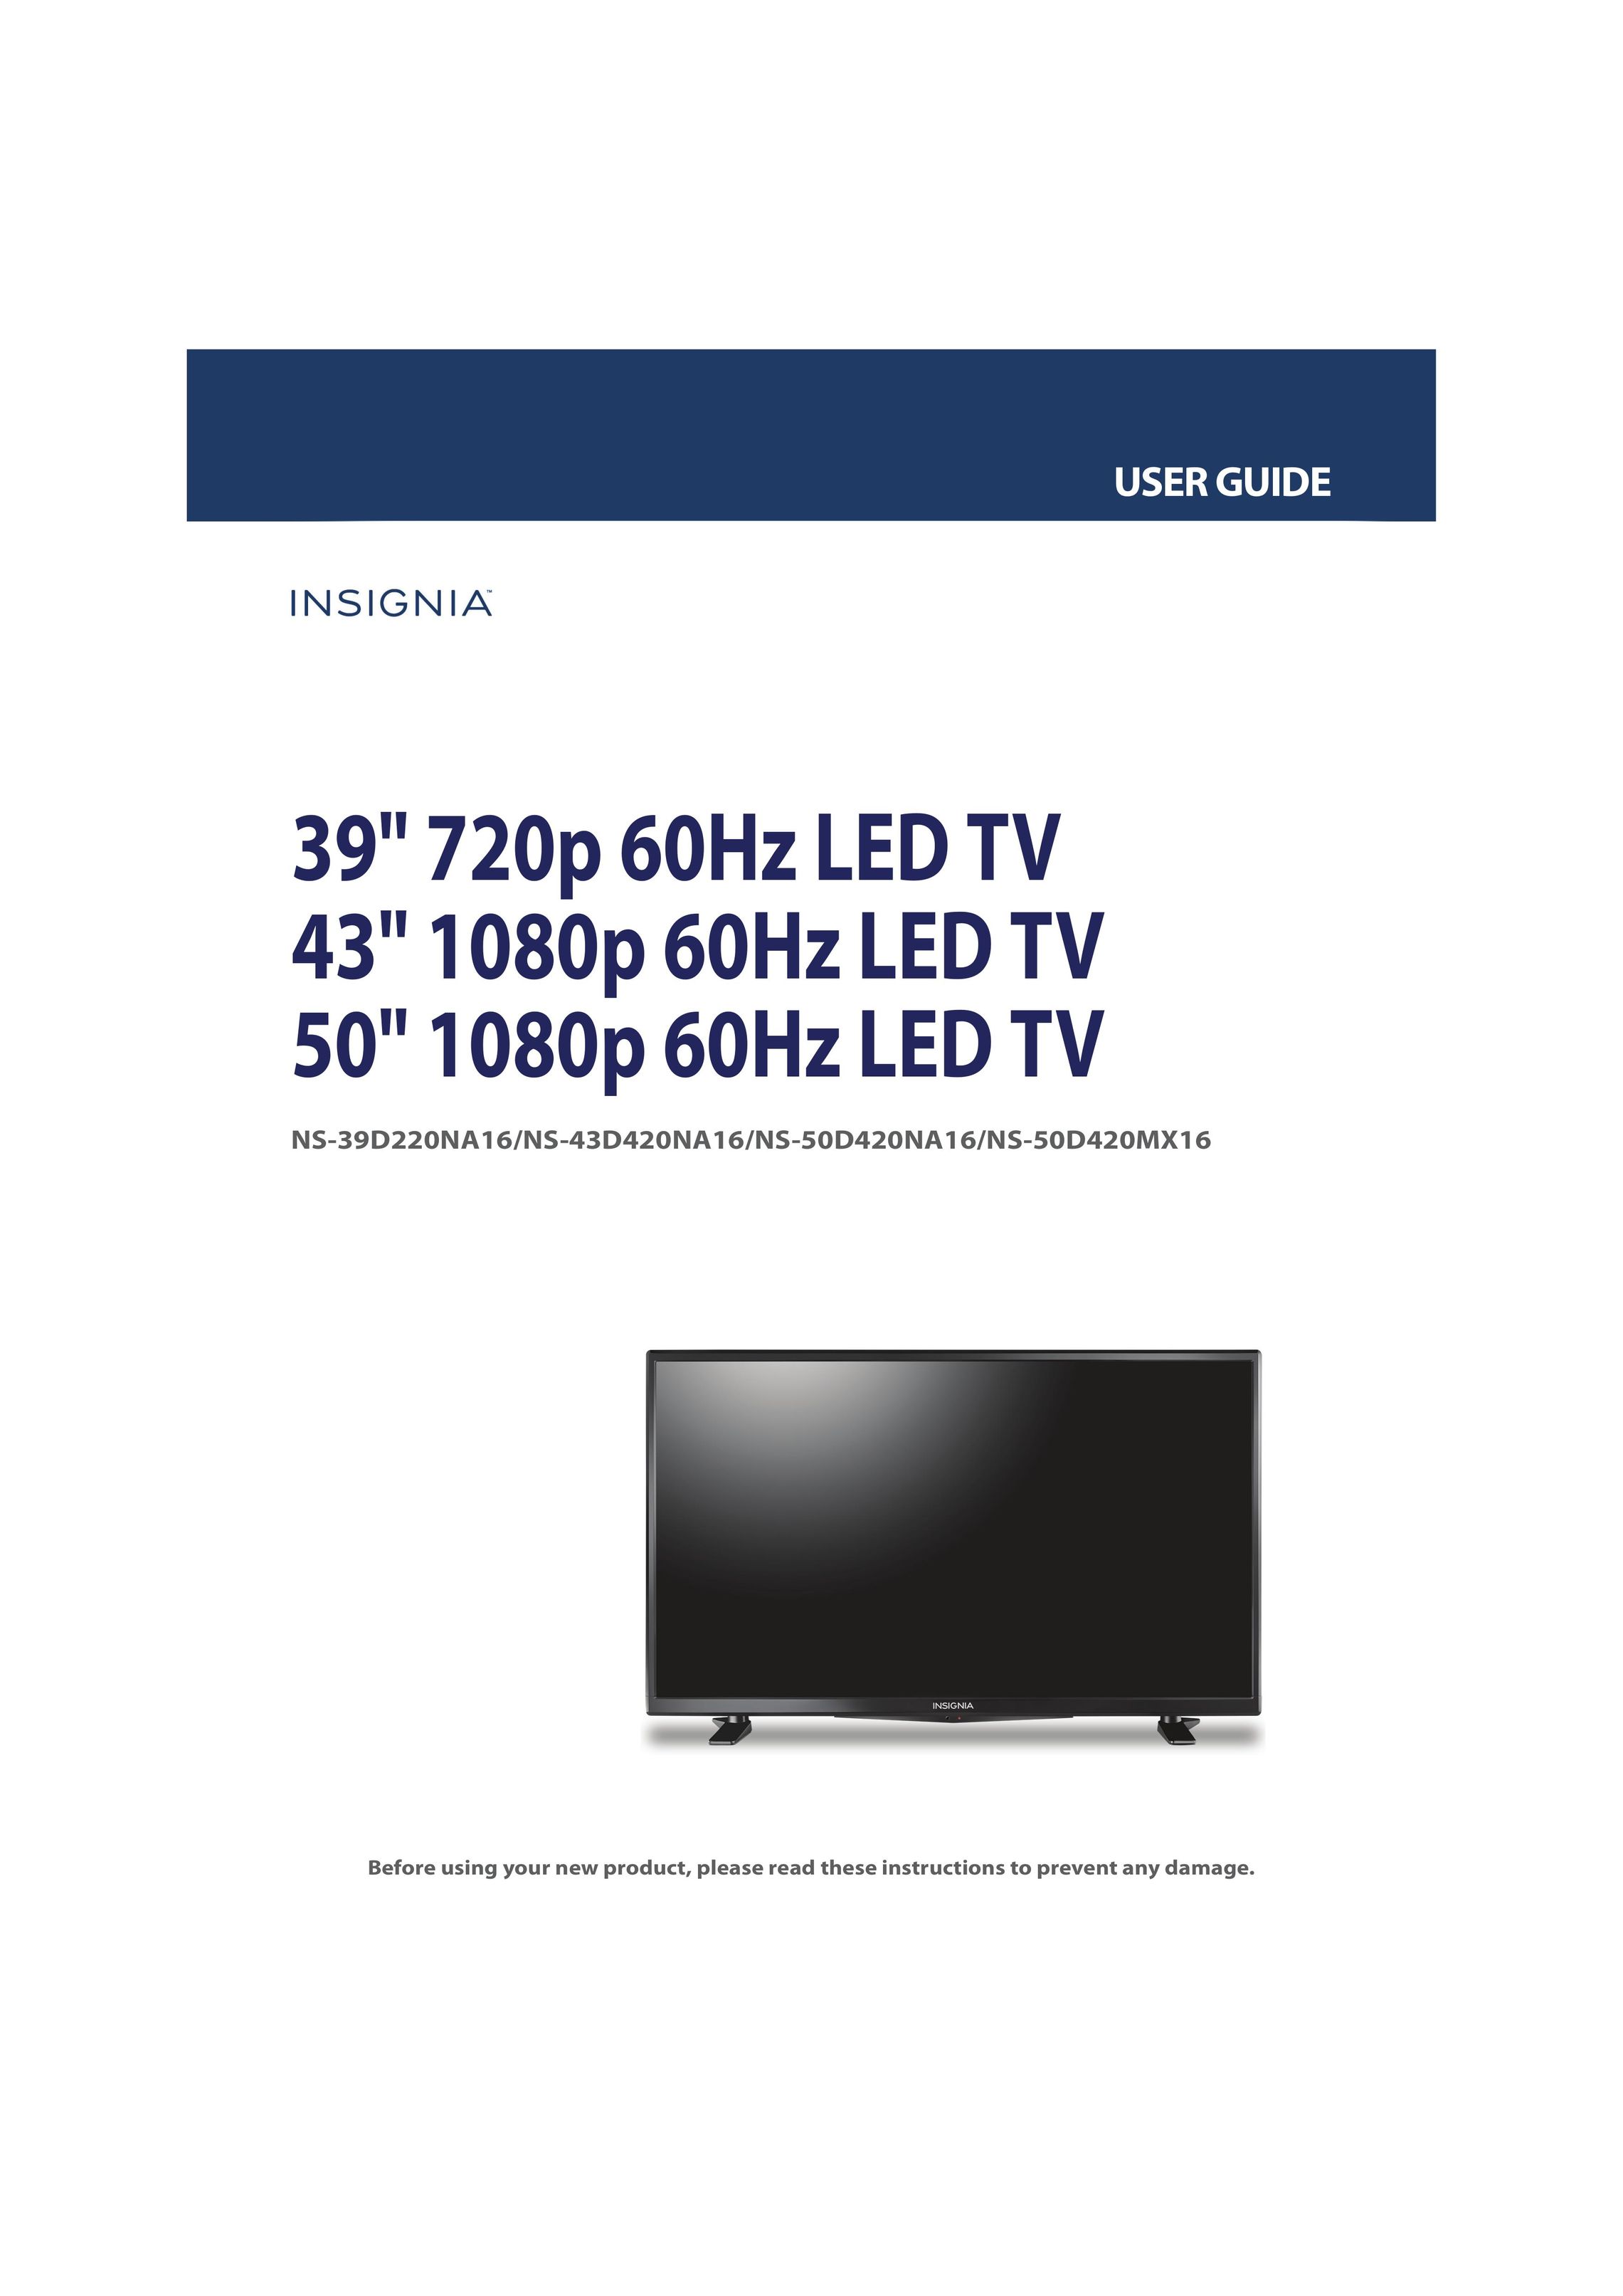 Insignia NS-50D420NA16 CRT Television User Manual